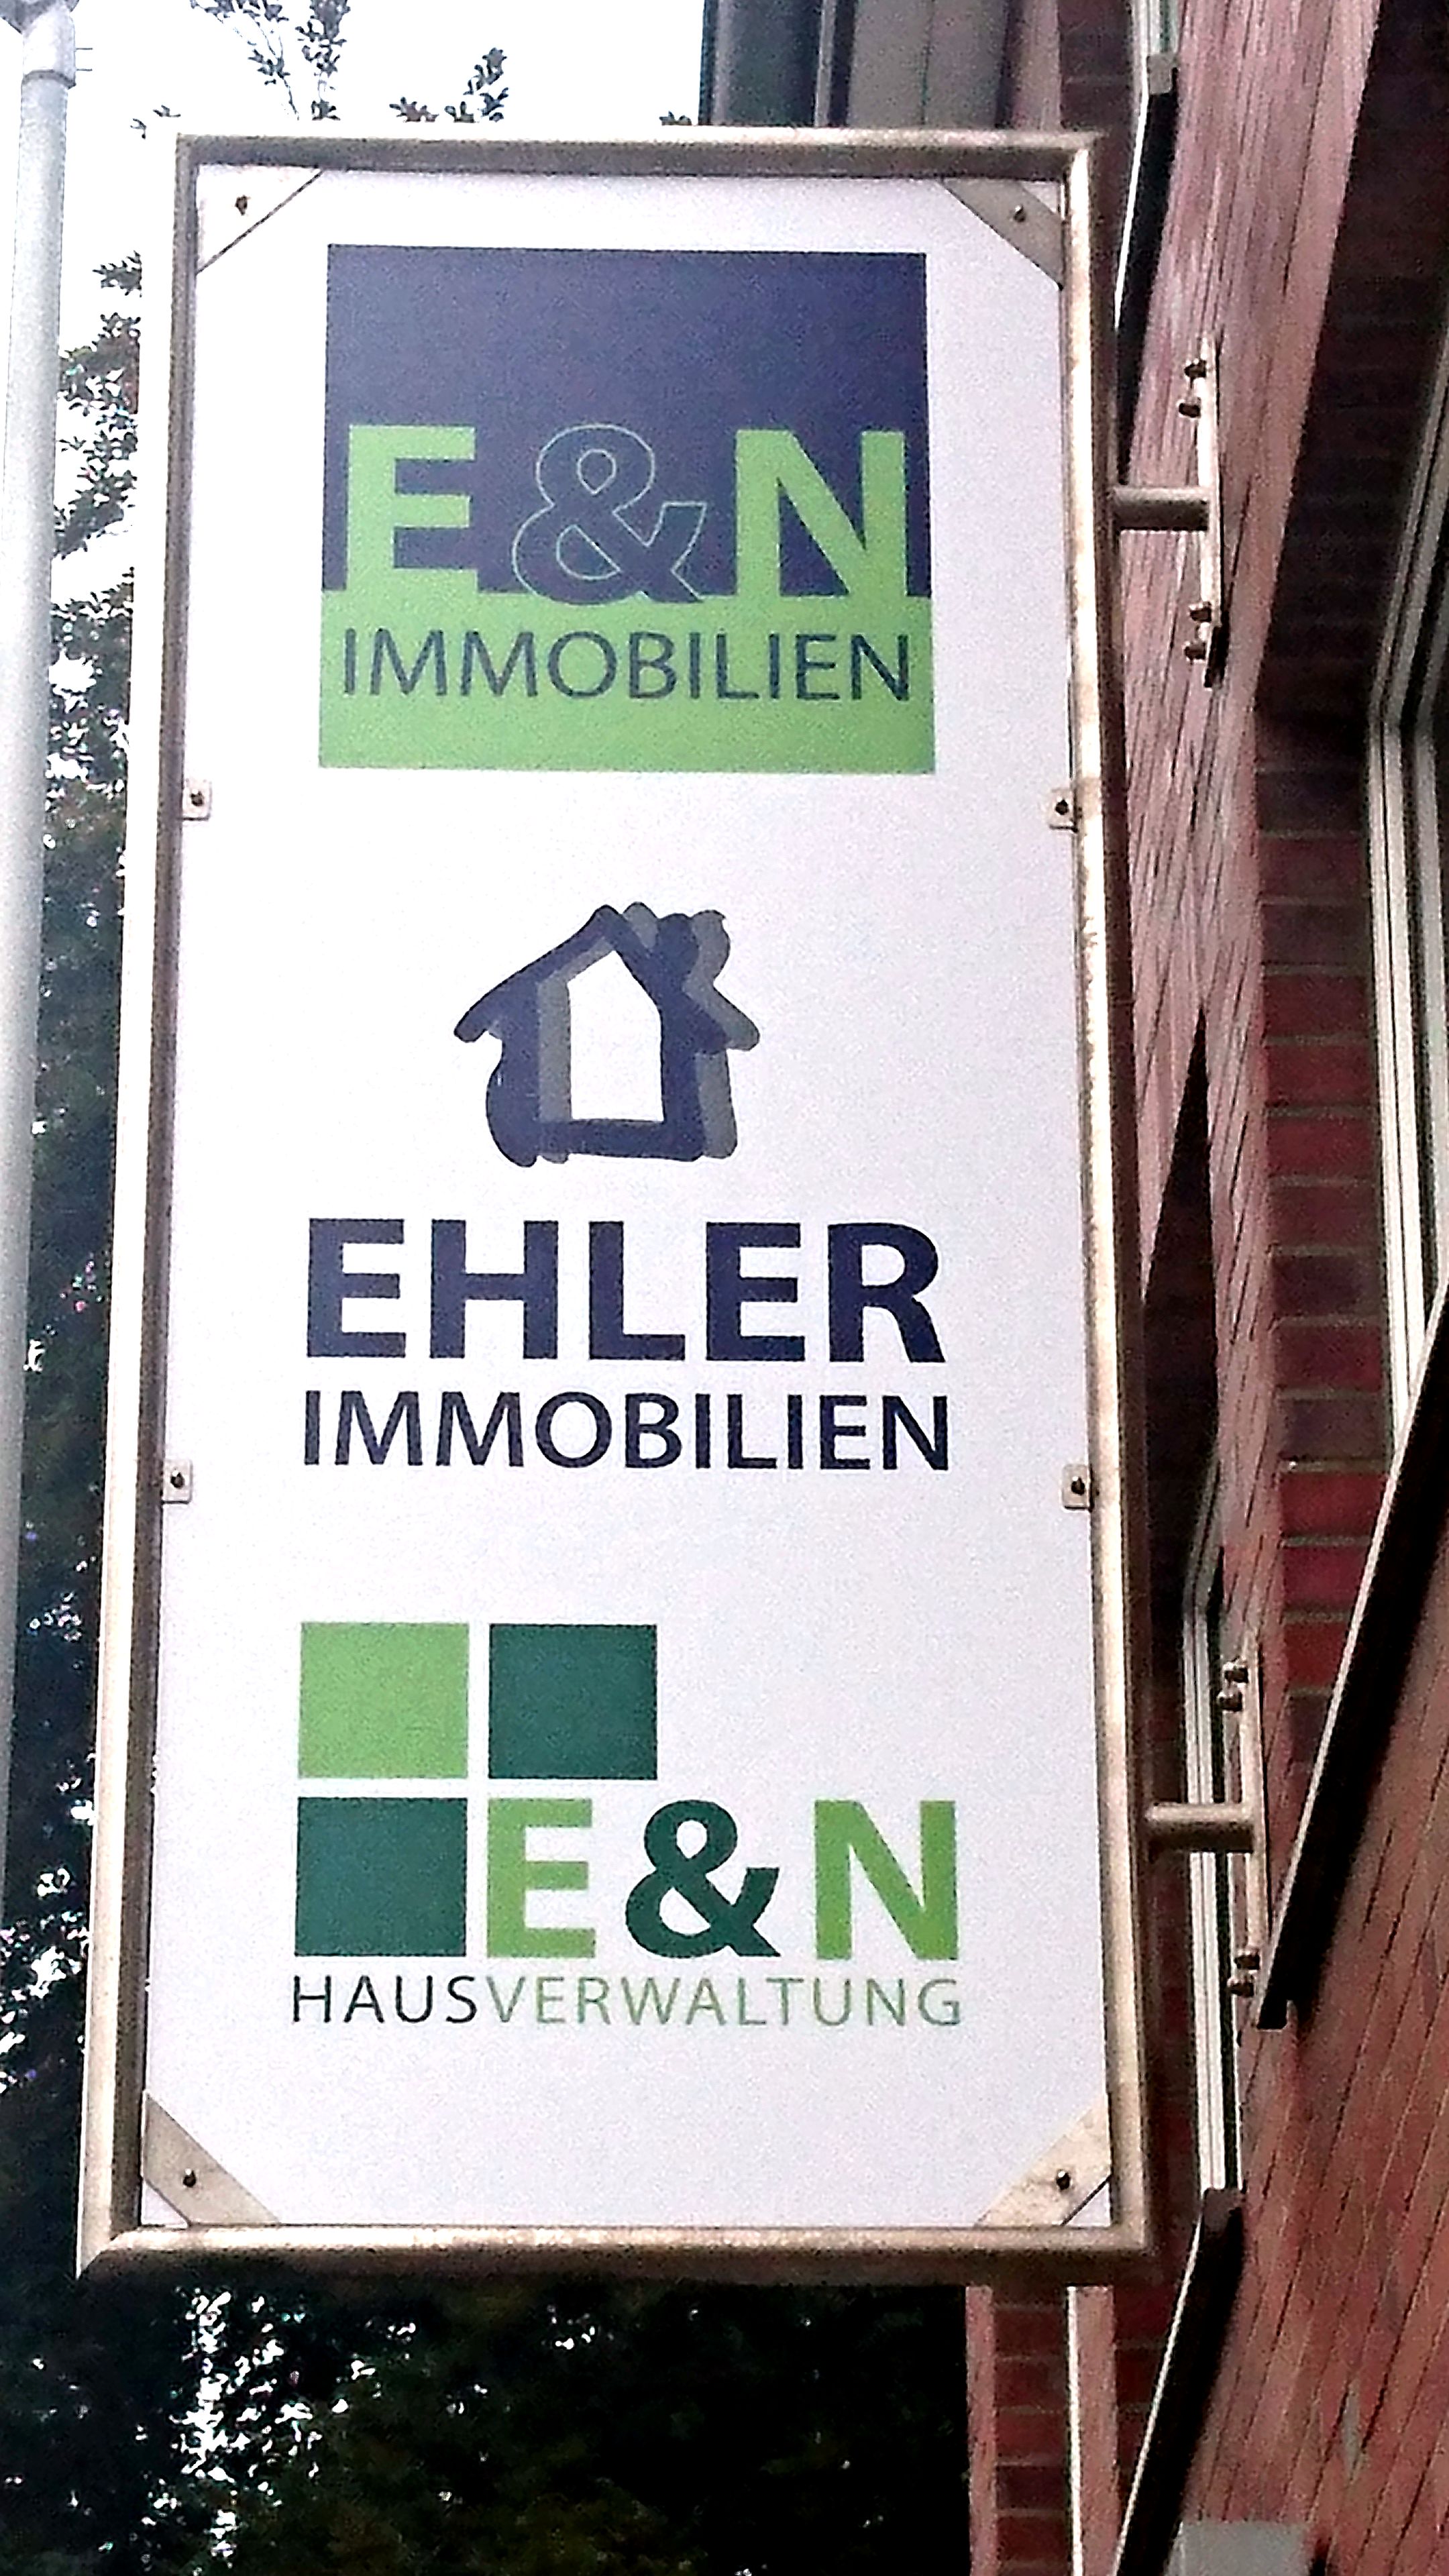 (c) Hildesheim-immobilien.de